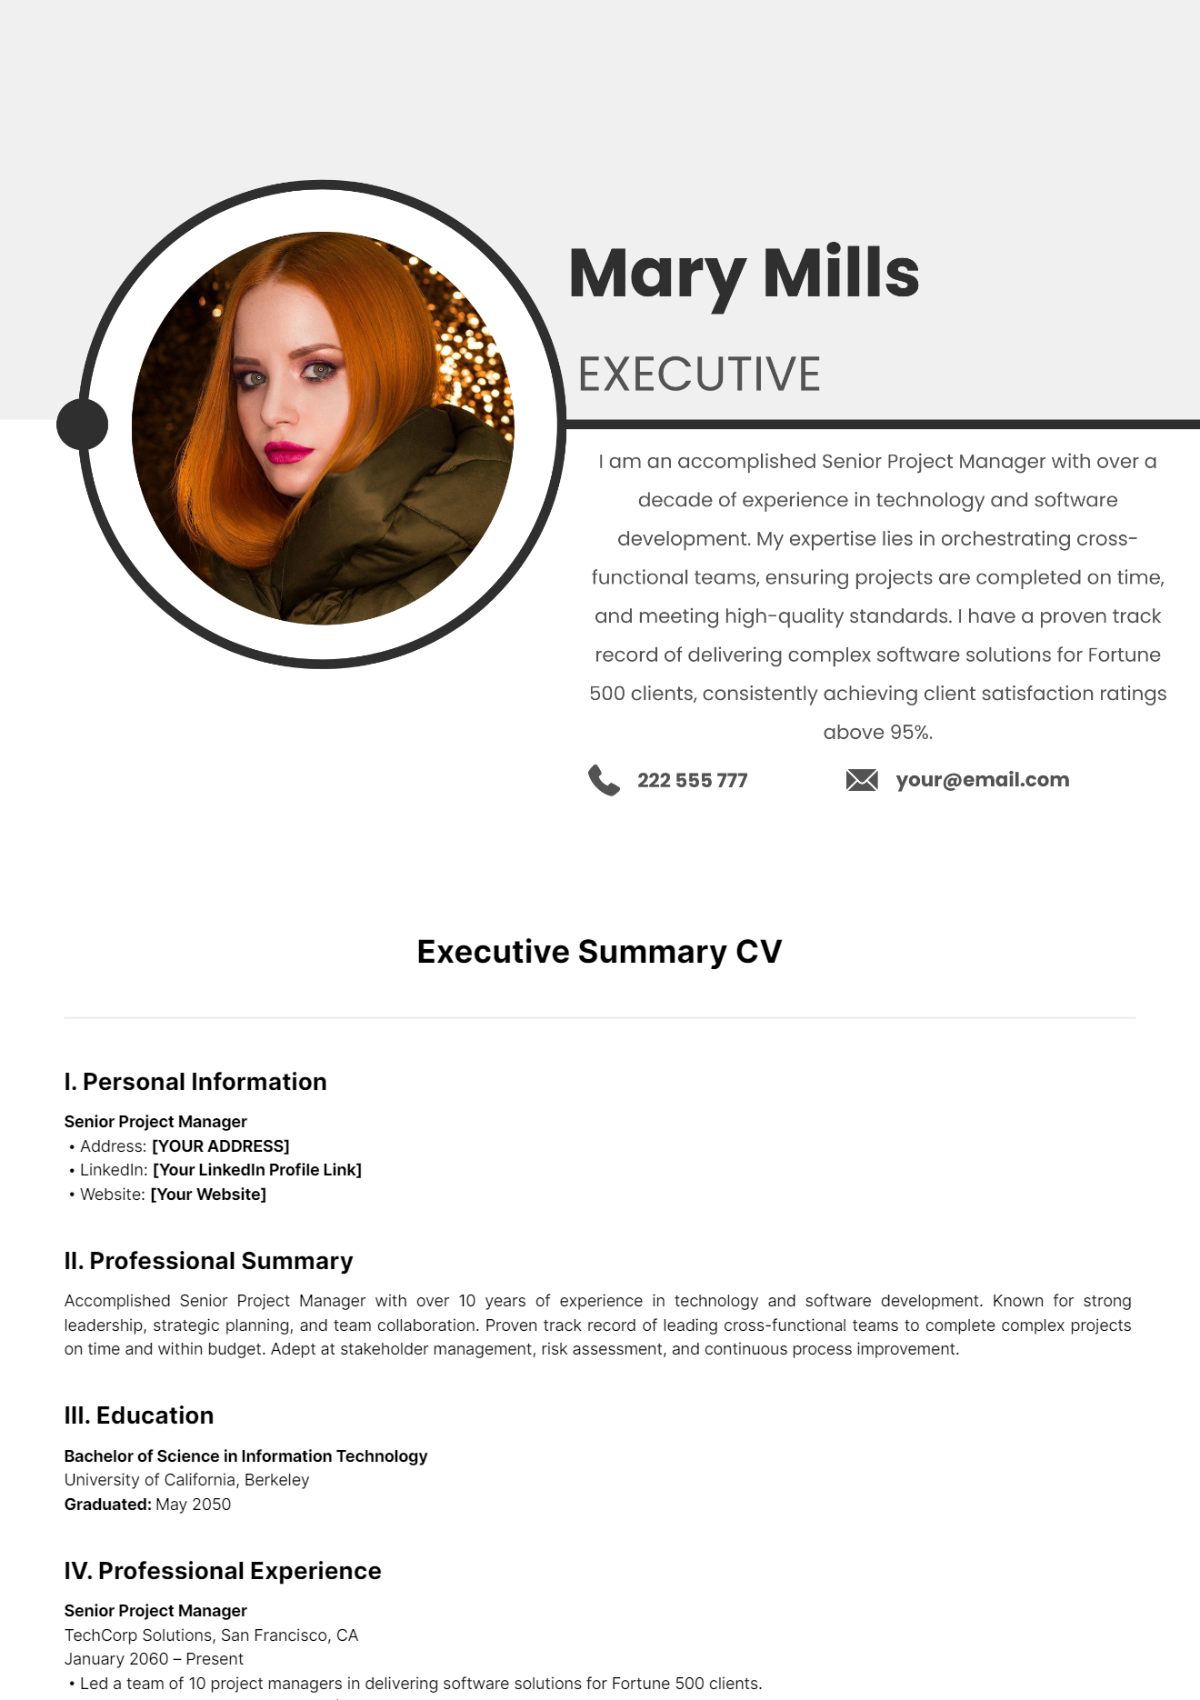 Executive Summary CV Template